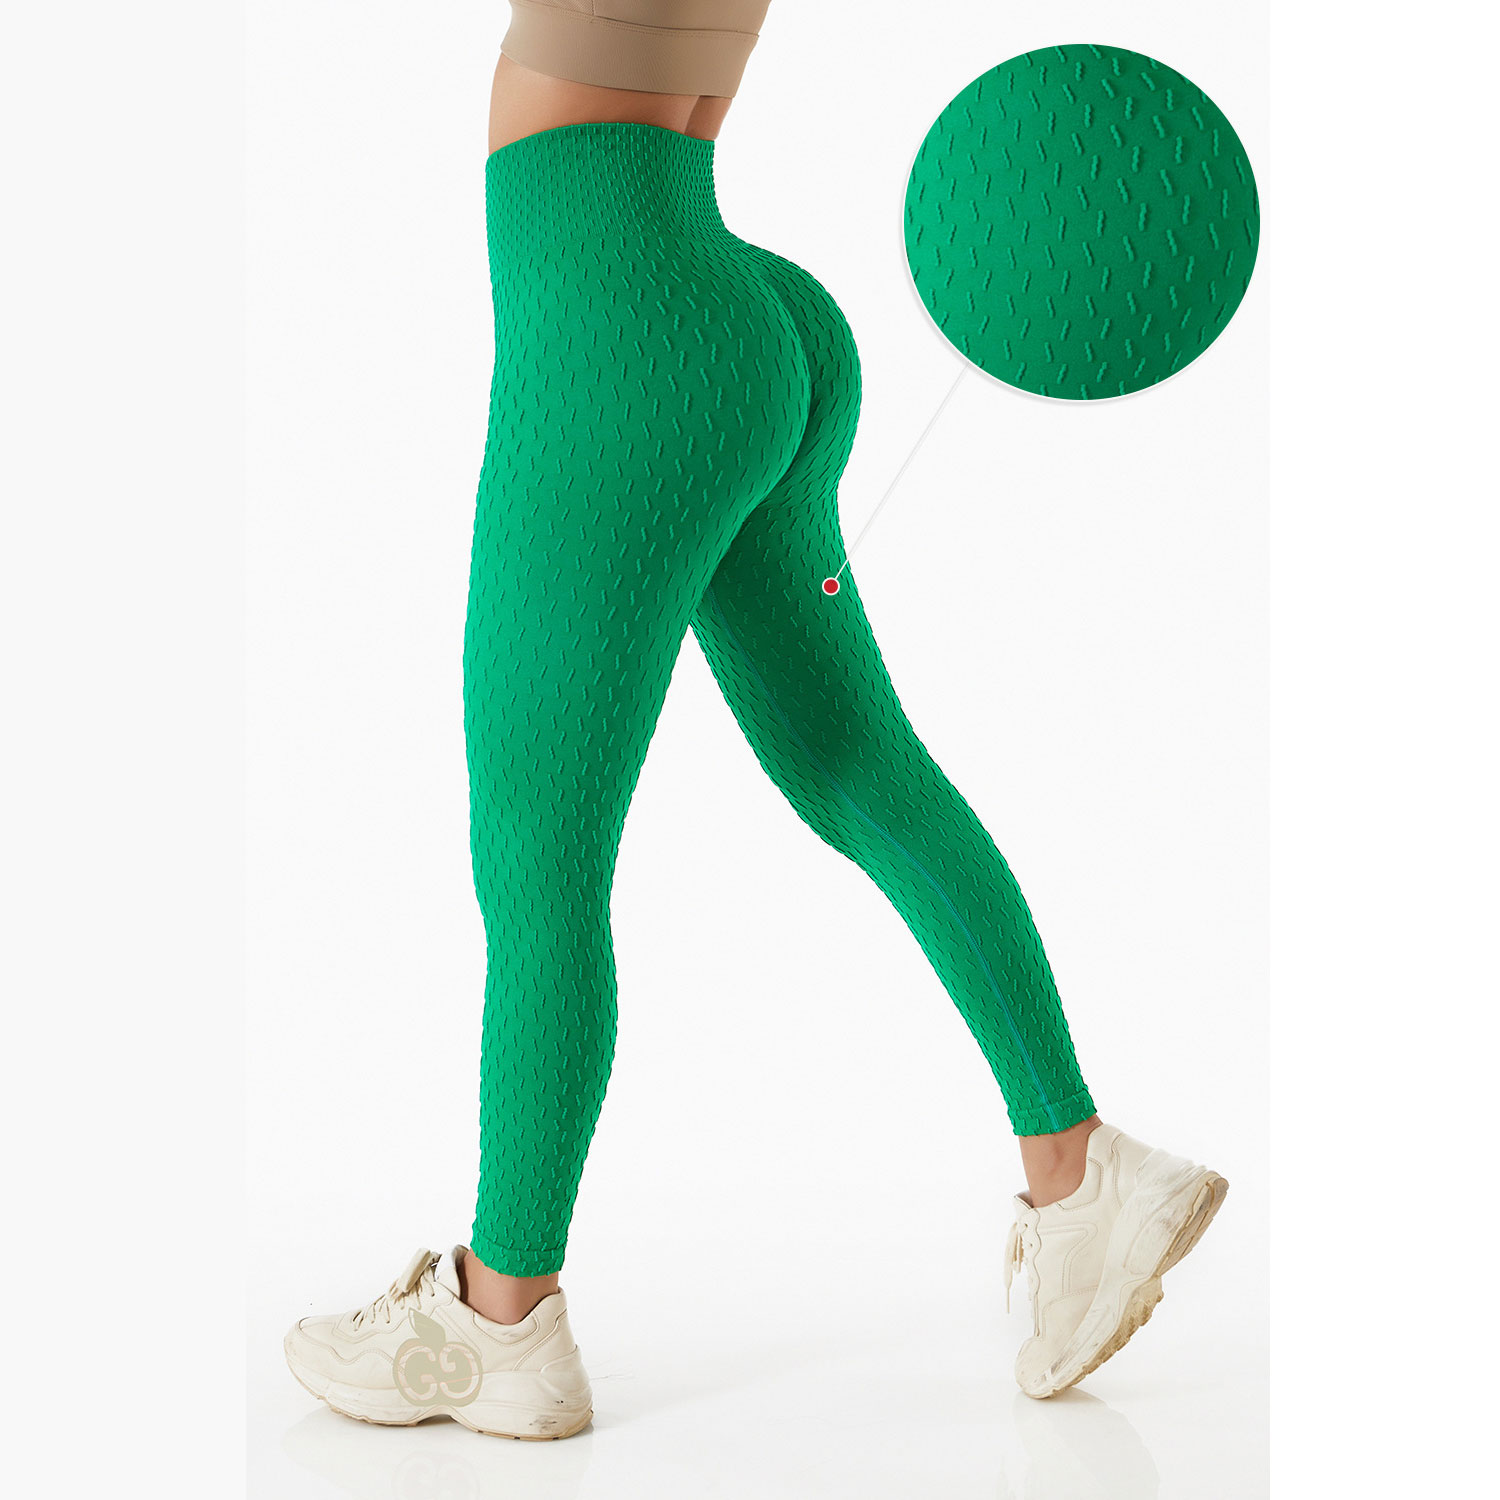 ව්‍යායාම සඳහා 3D Jacquard Weave Sports Pants විශේෂාංගී රූපය